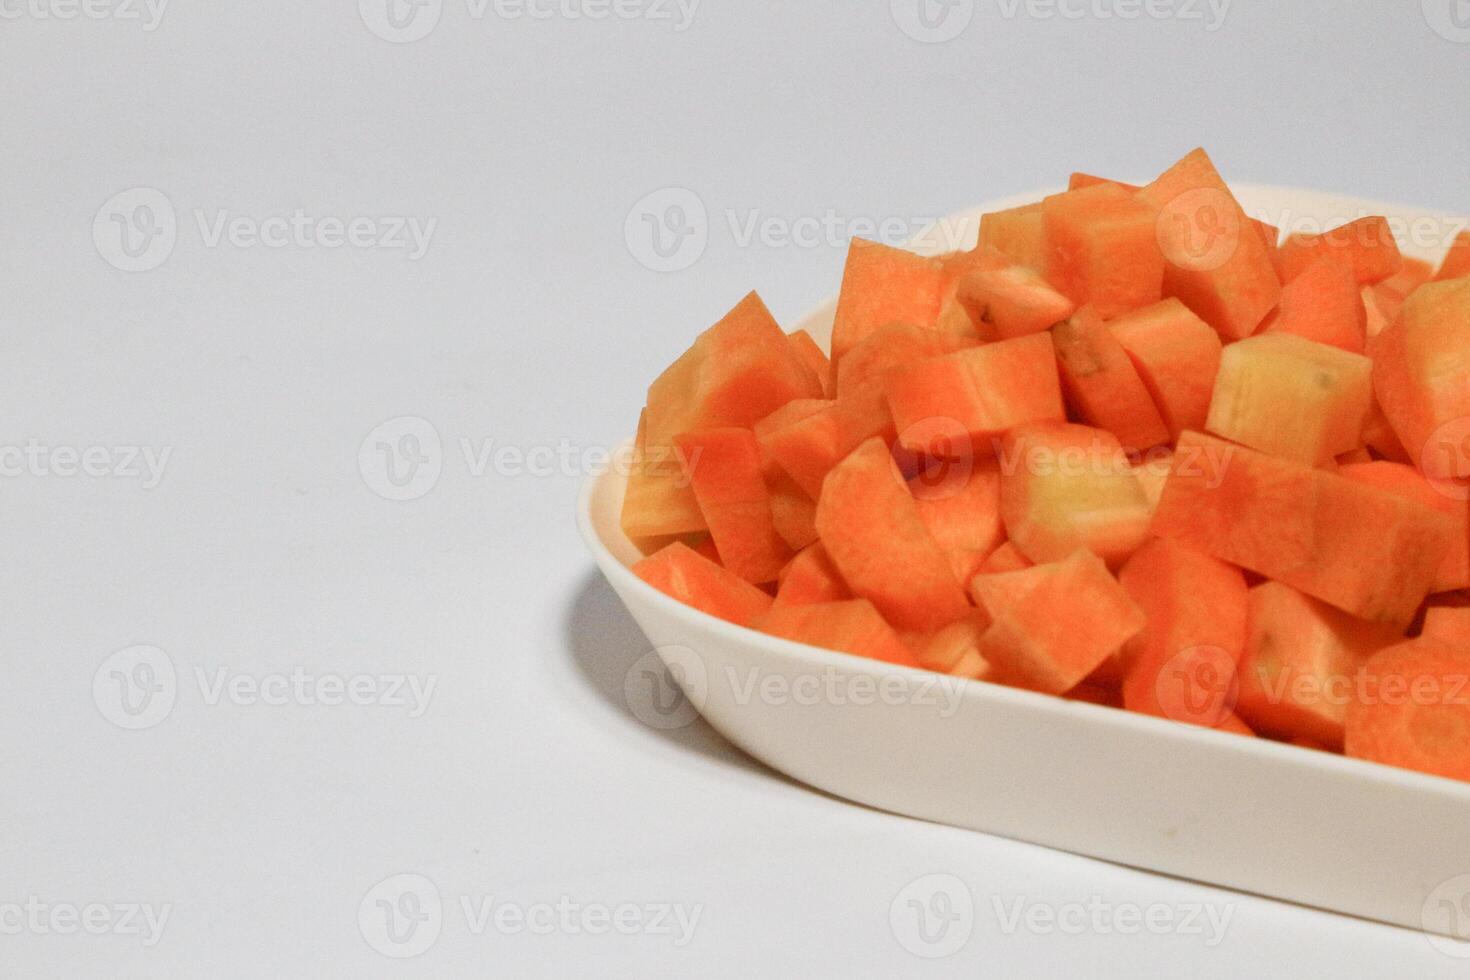 tritato carota cubi, verdura modello sfondo foto